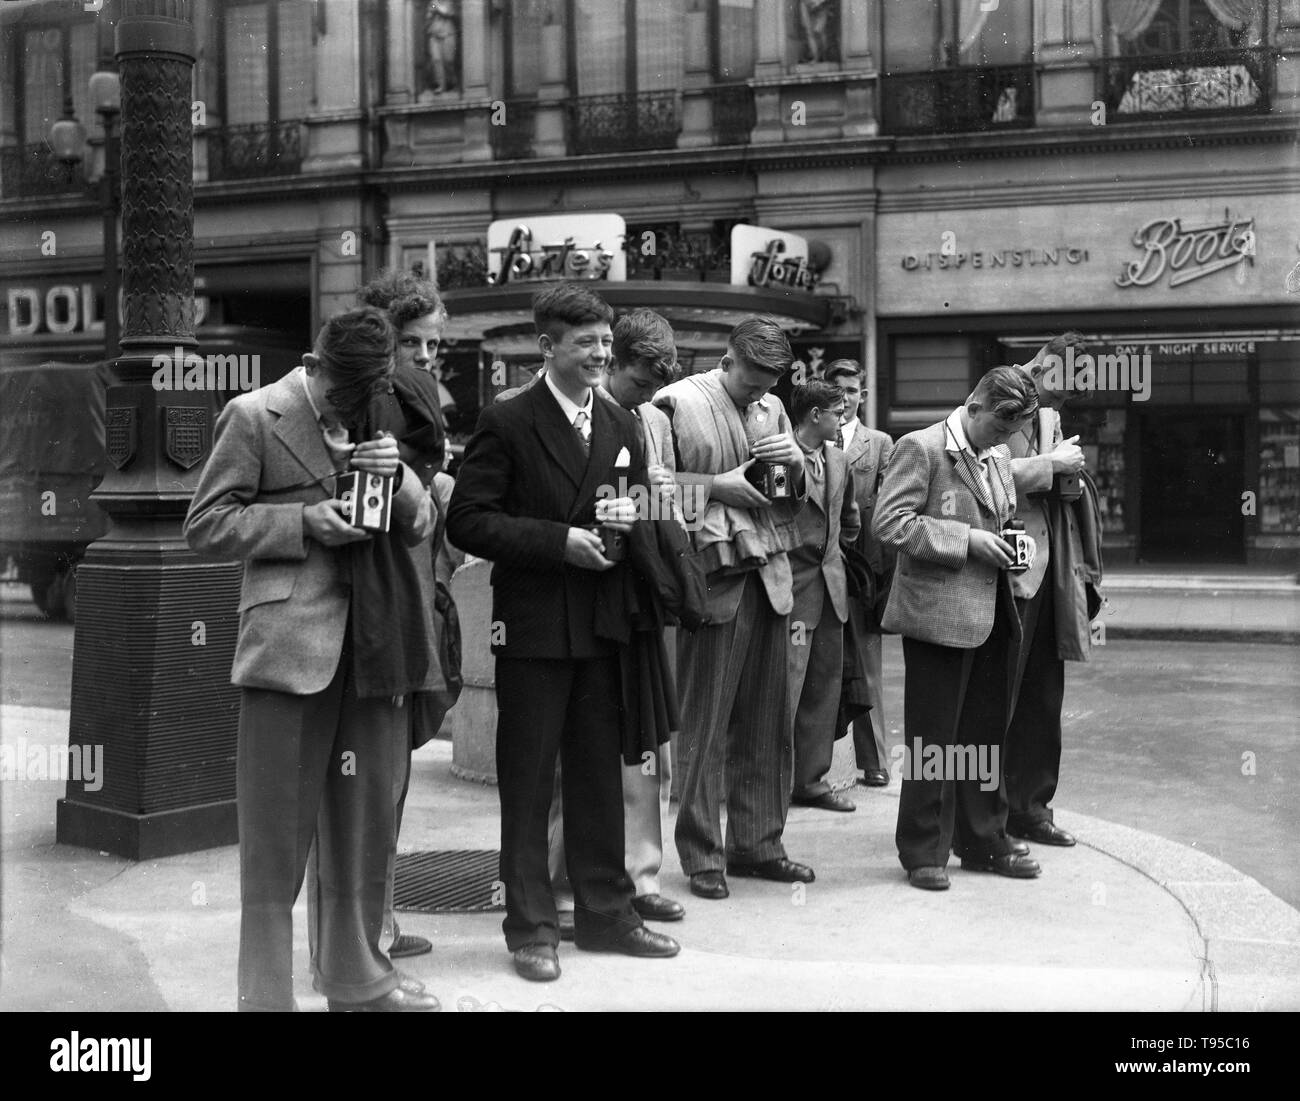 Les jeunes hommes habillés d'adolescents de prendre des photographies à Westminster, Londres, 1949 Banque D'Images